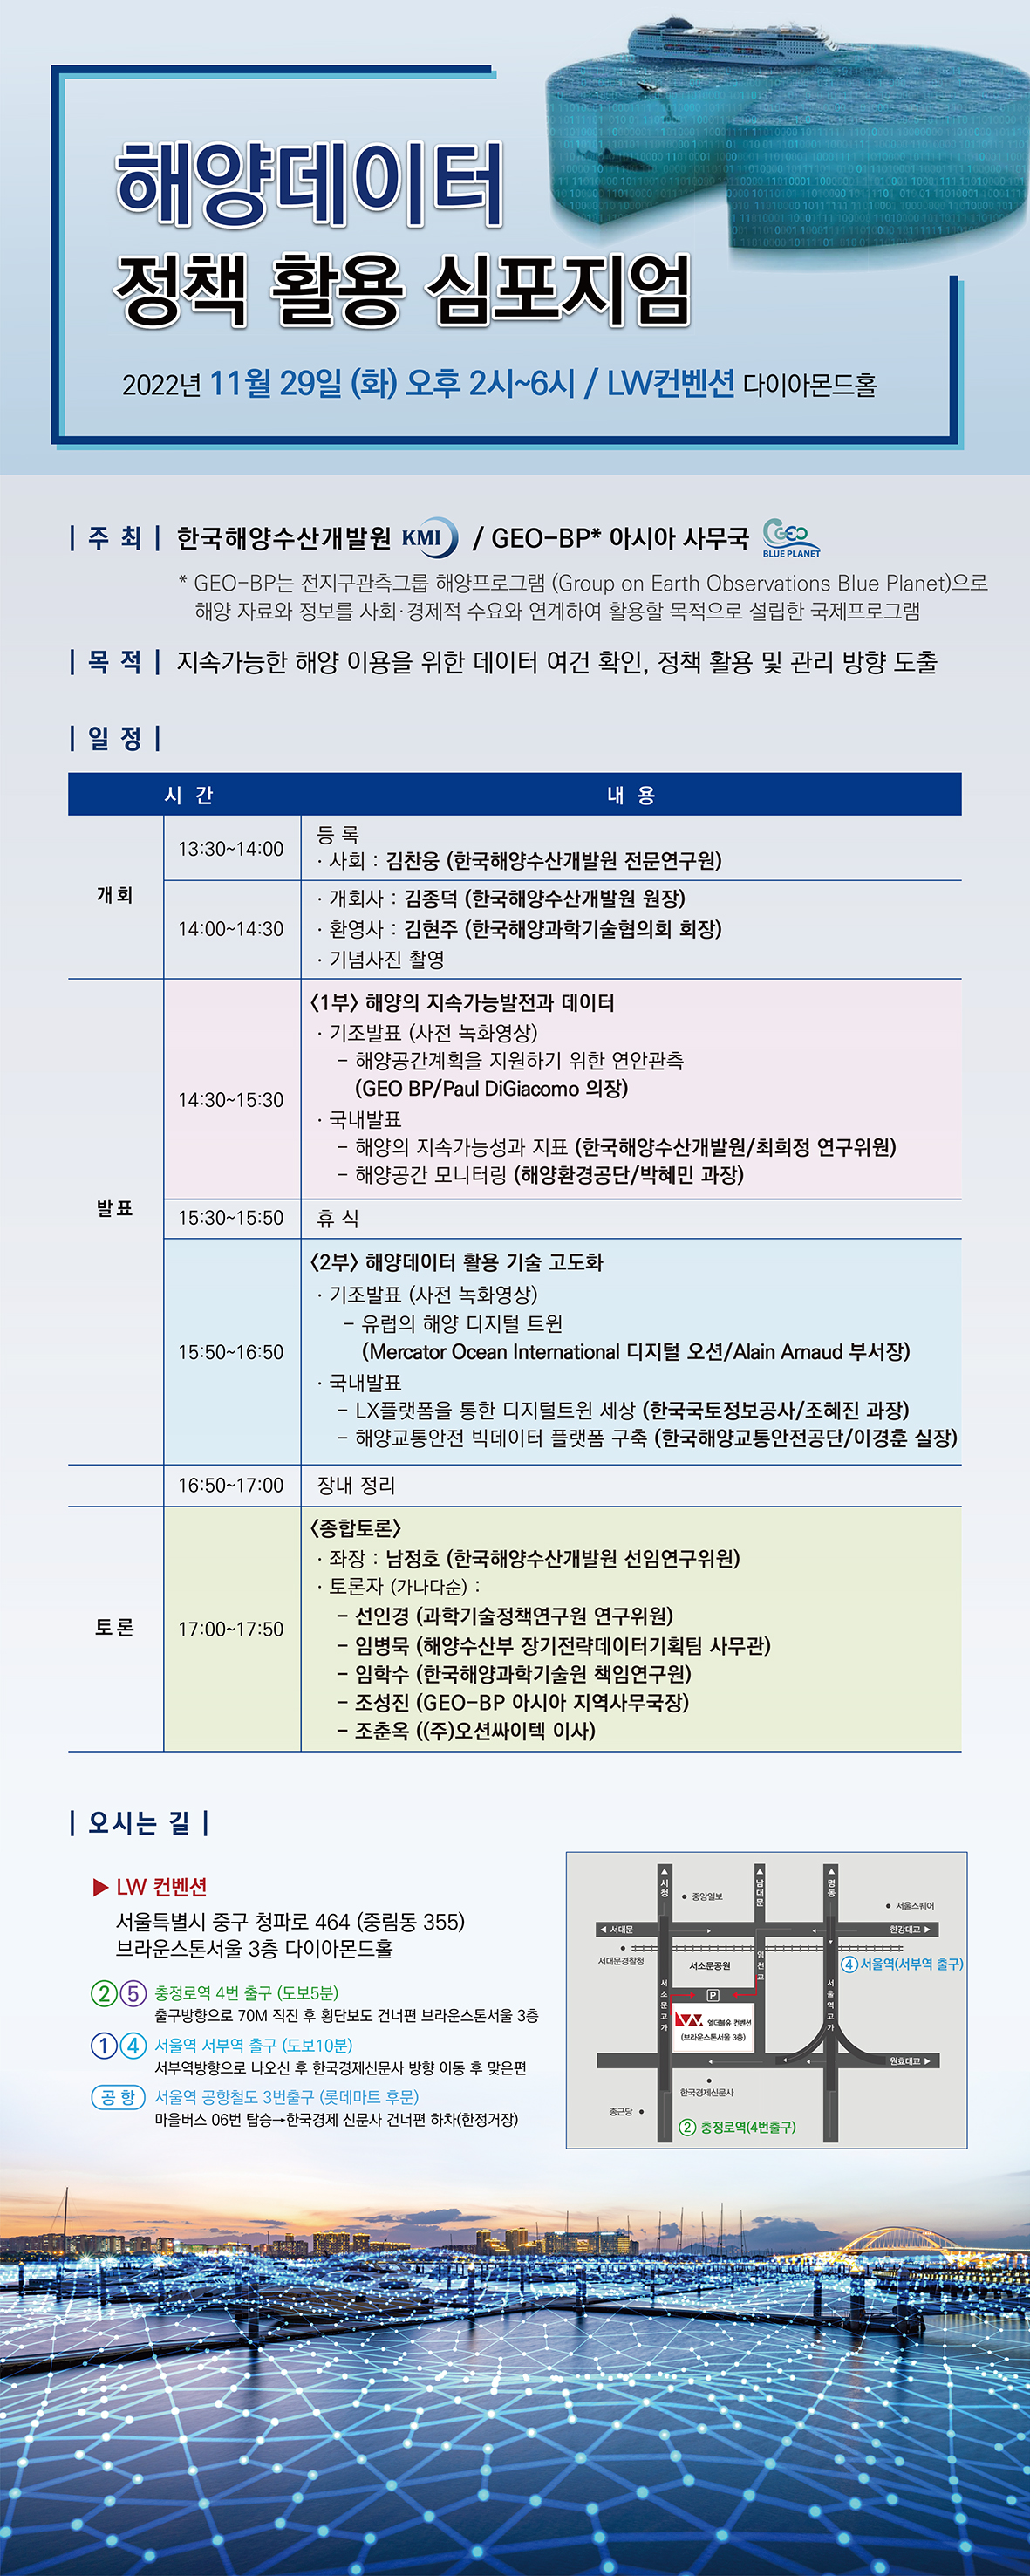 해양데이터 정책 활용 심포지엄 개최 안내(11.29(화) 14:00~ ) 이미지